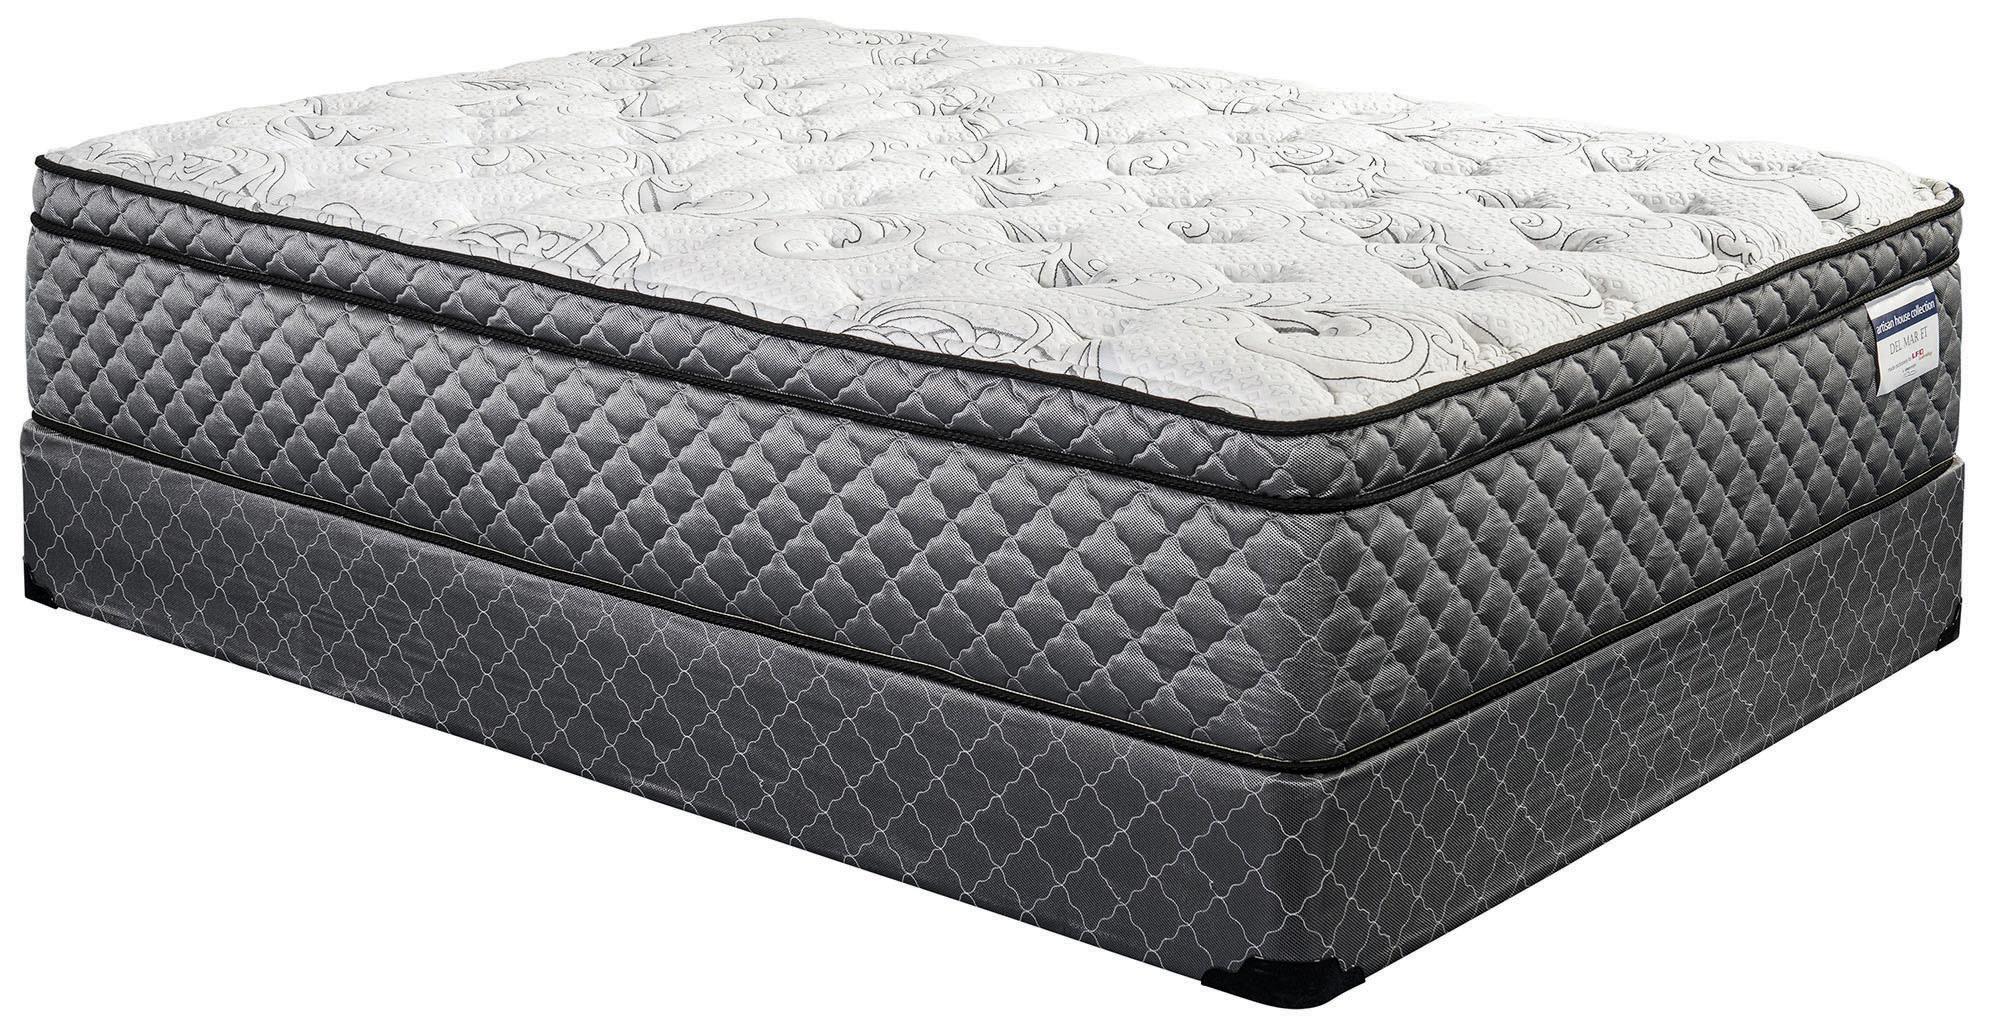 sleep design mattress prices